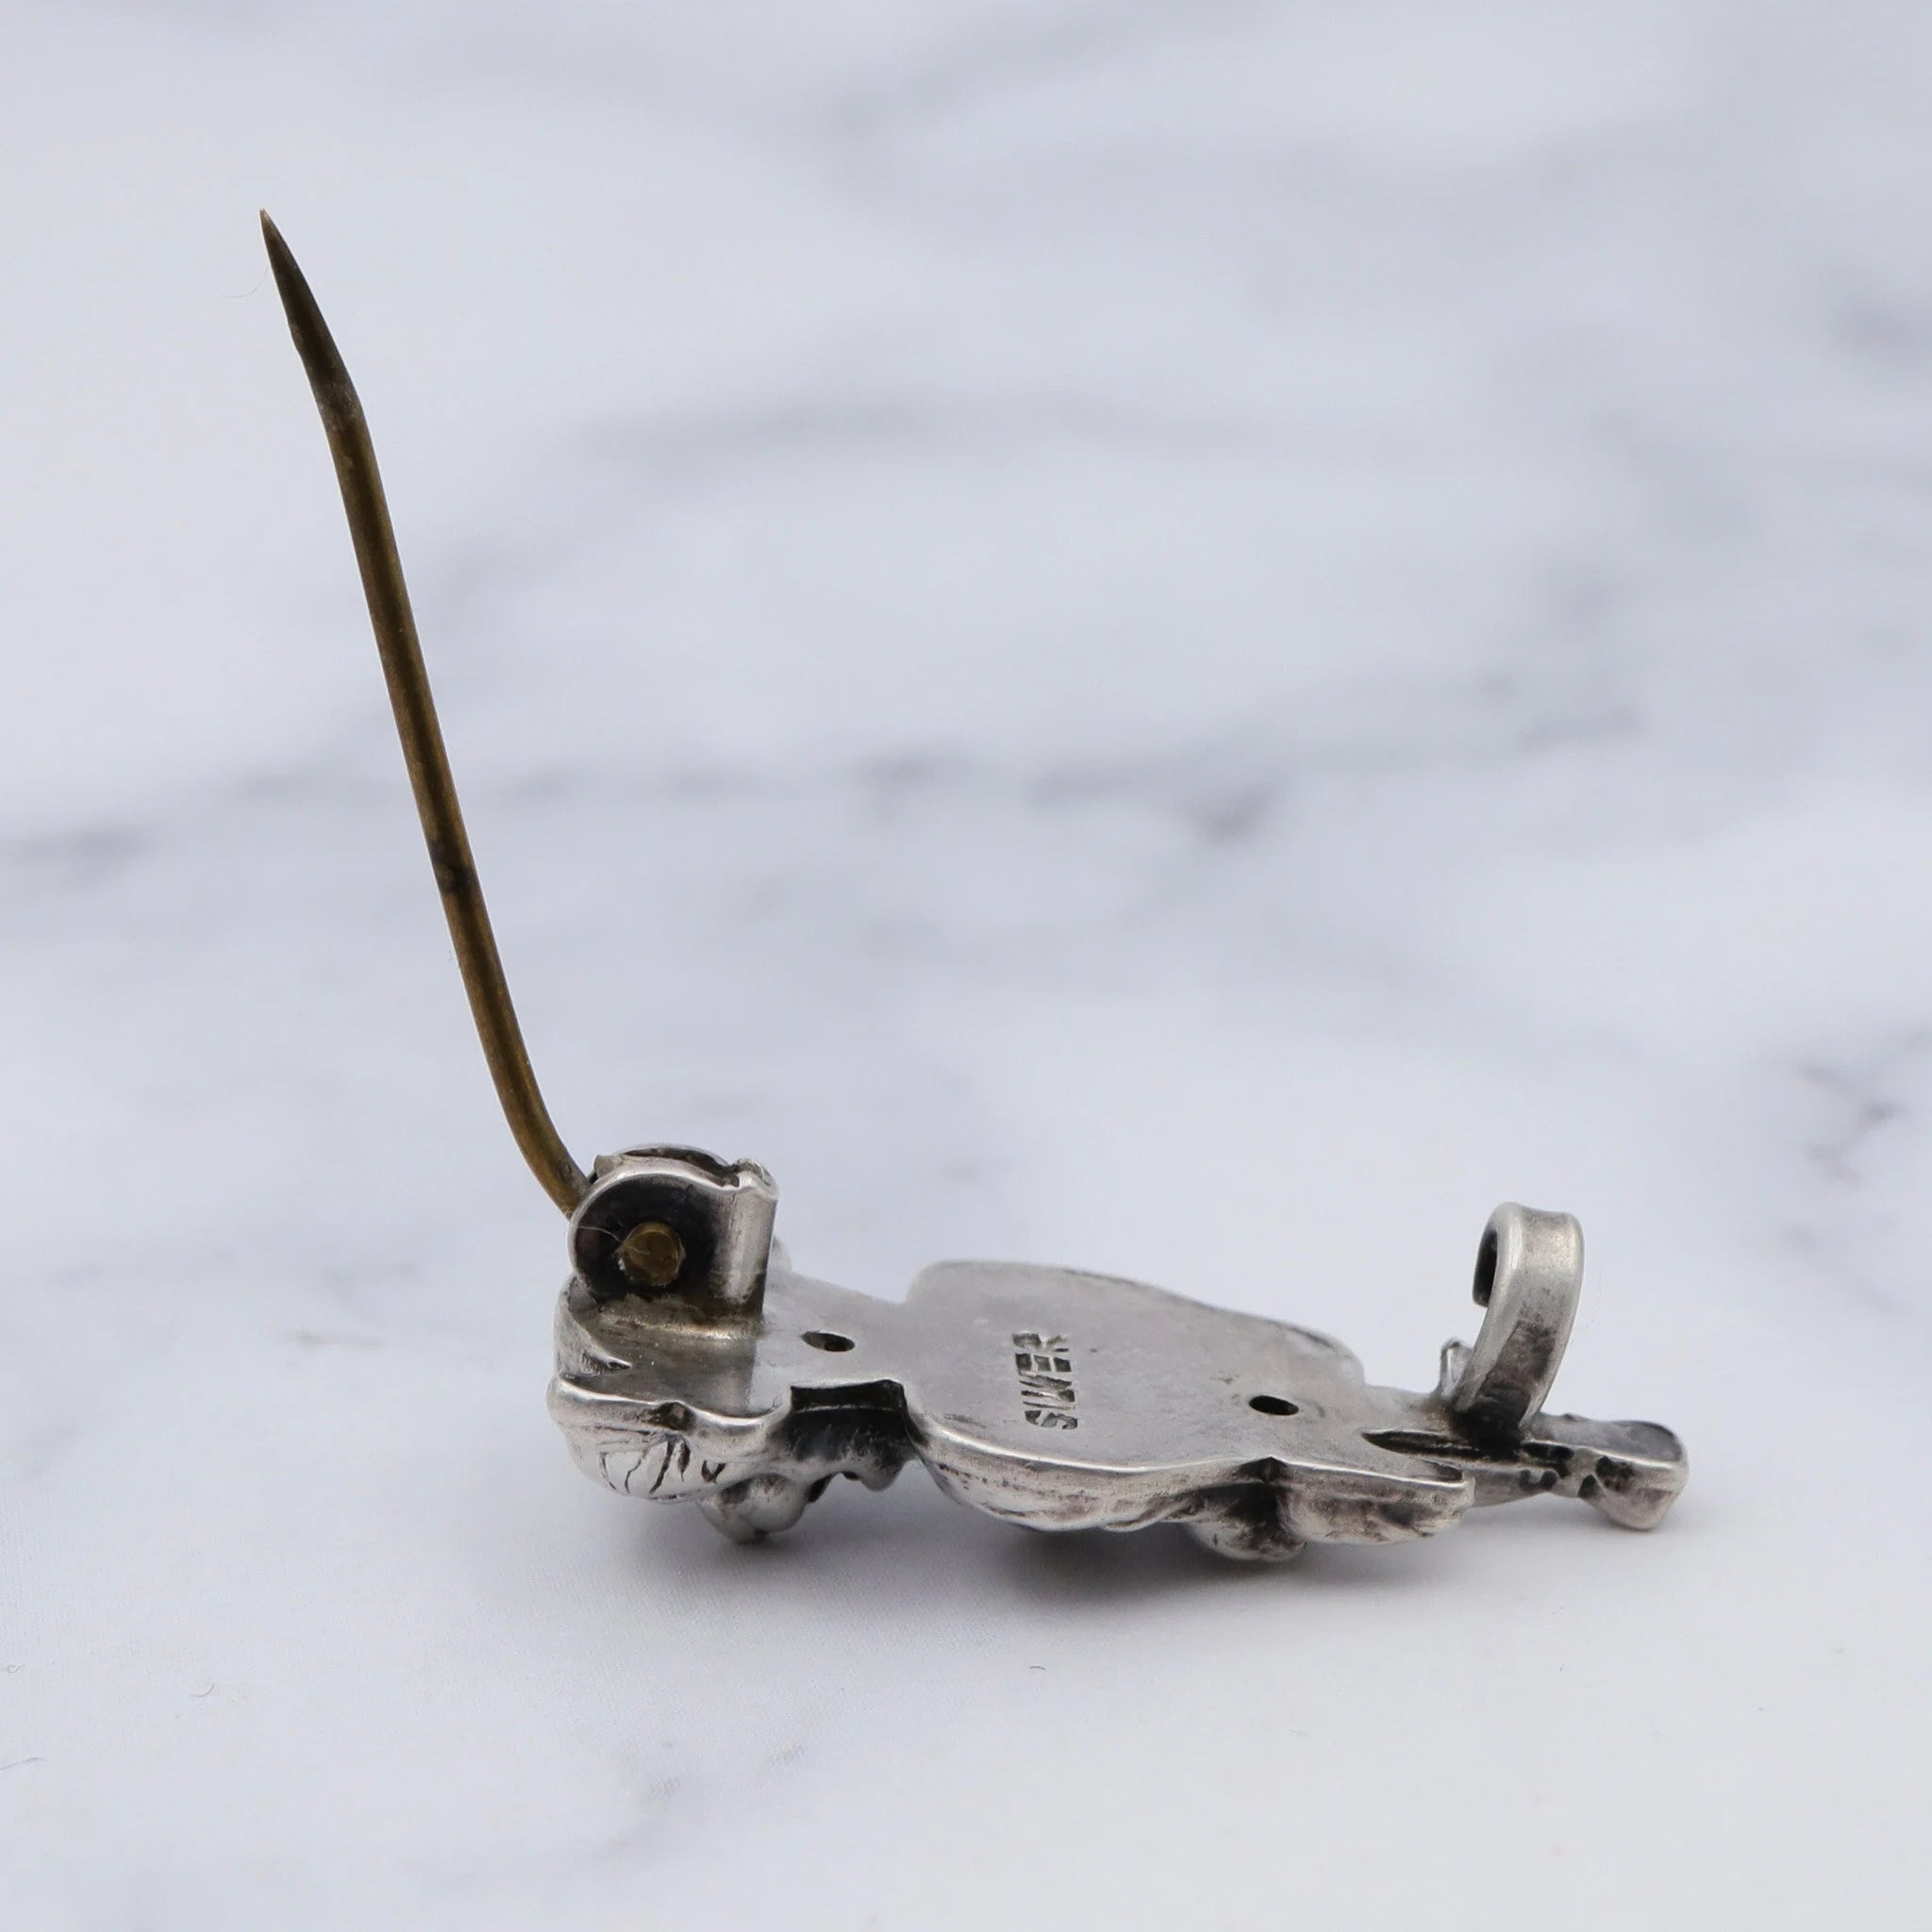 Antique sterling Minotaur pin/brooch